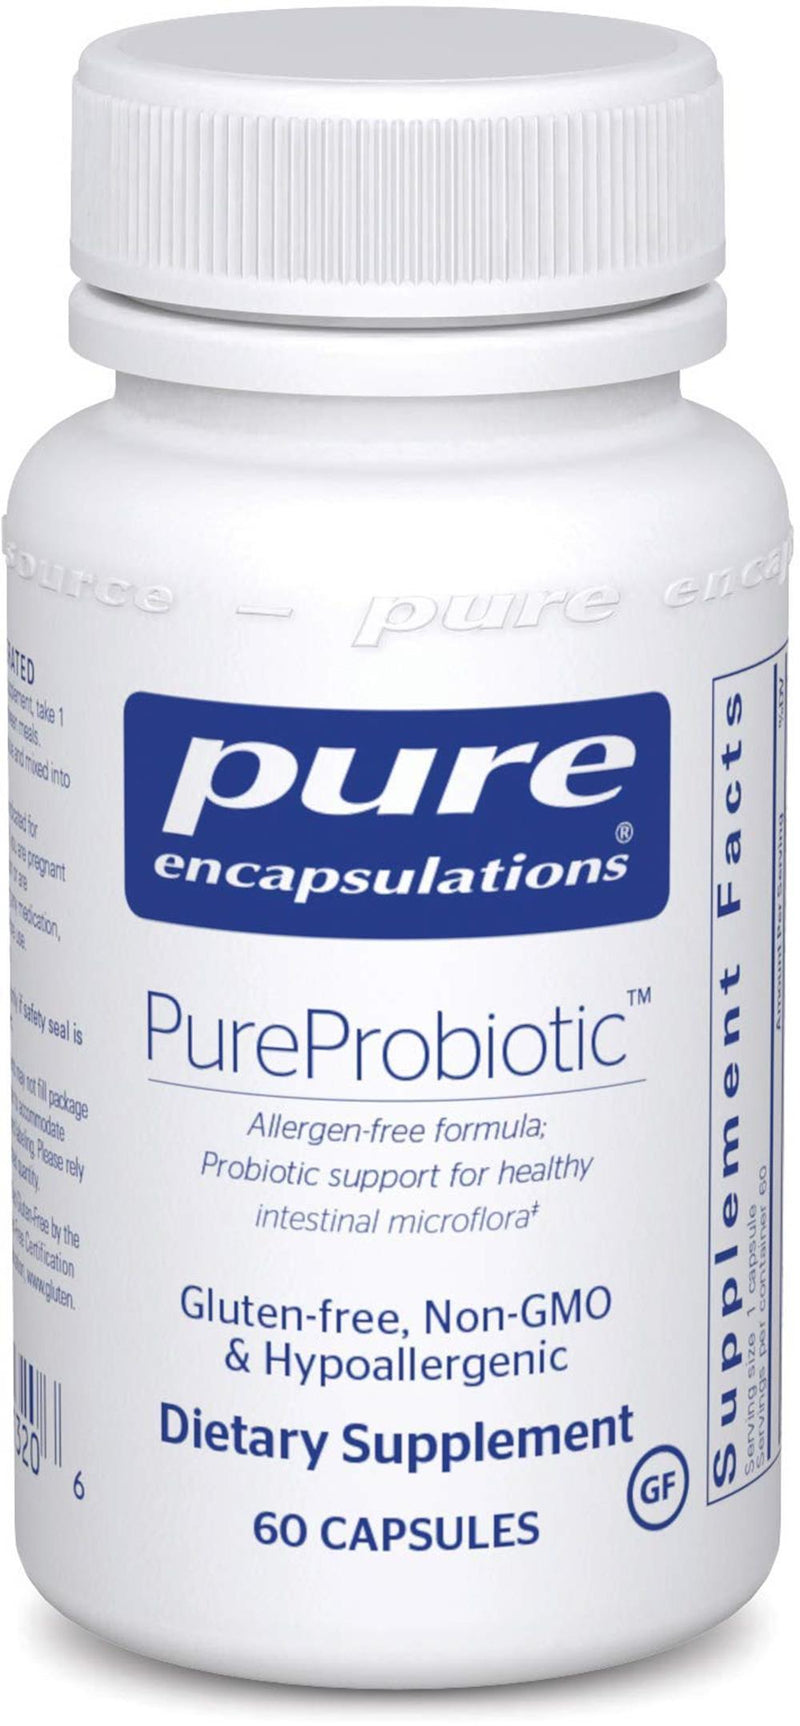 Pure Encapsulations PureProbioticâ„¢ -- 60 Capsules